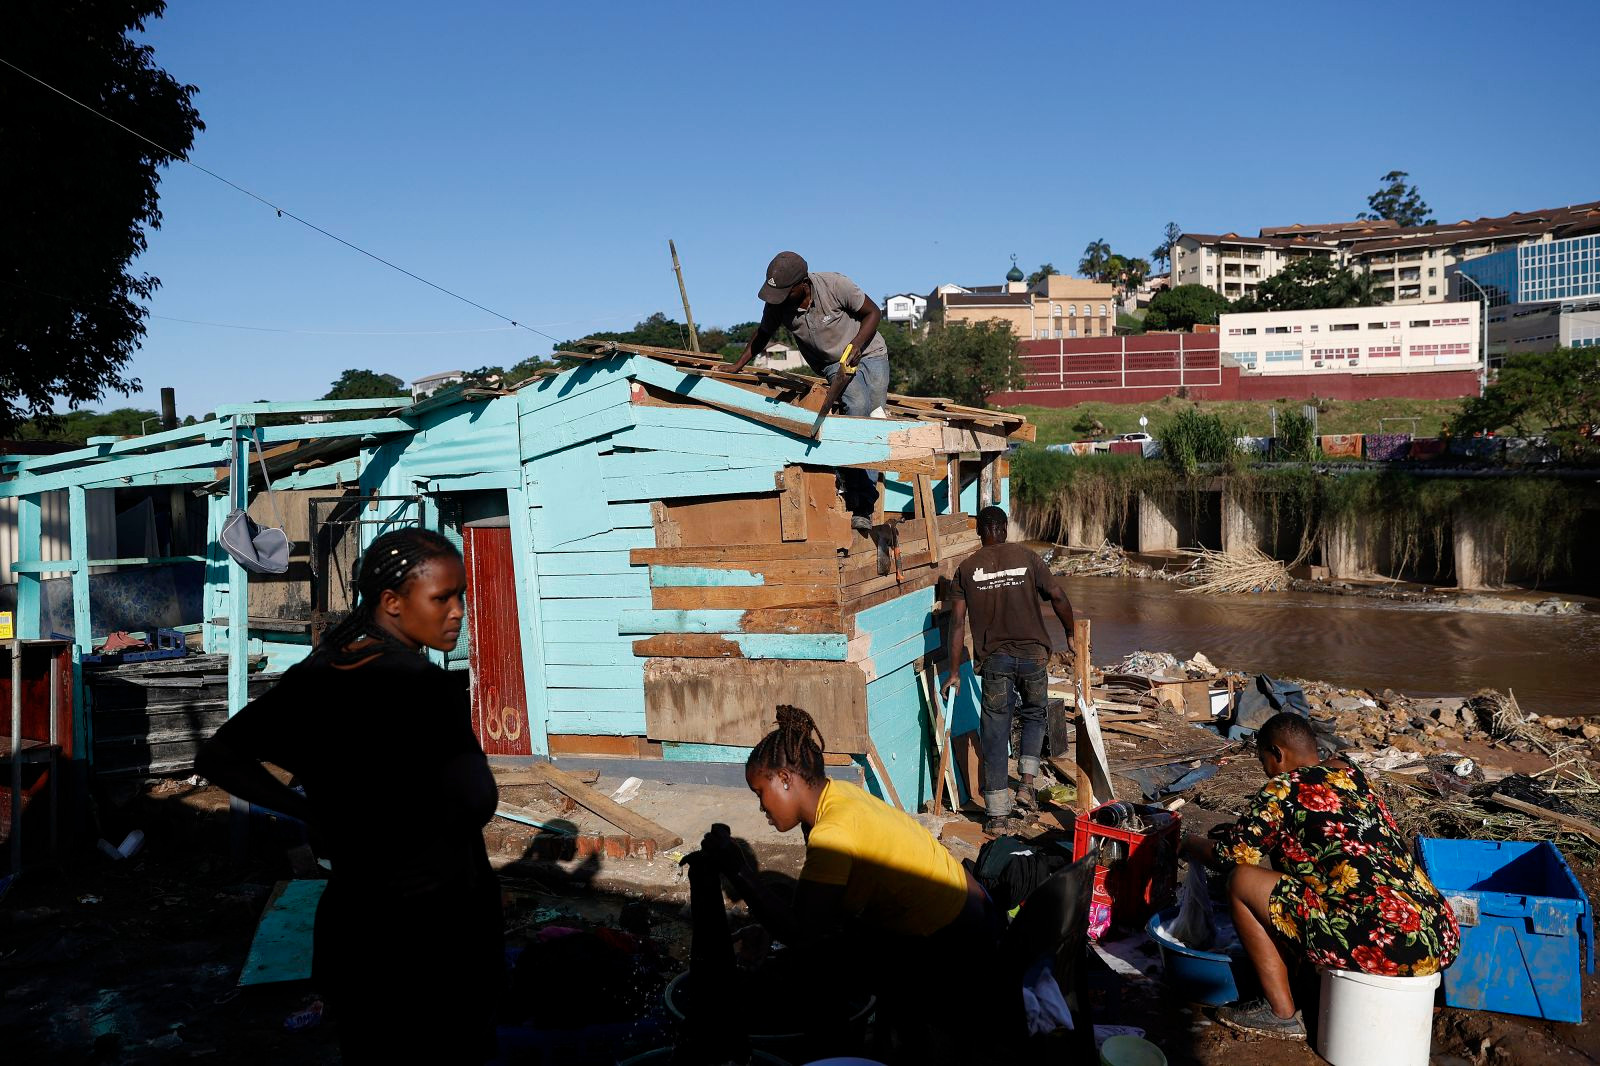 Một vài người giặt quần áo trong khi những người khác làm việc để xây dựng lại các ngôi nhà bị hư hỏng ở Durban. Ảnh: CNN.